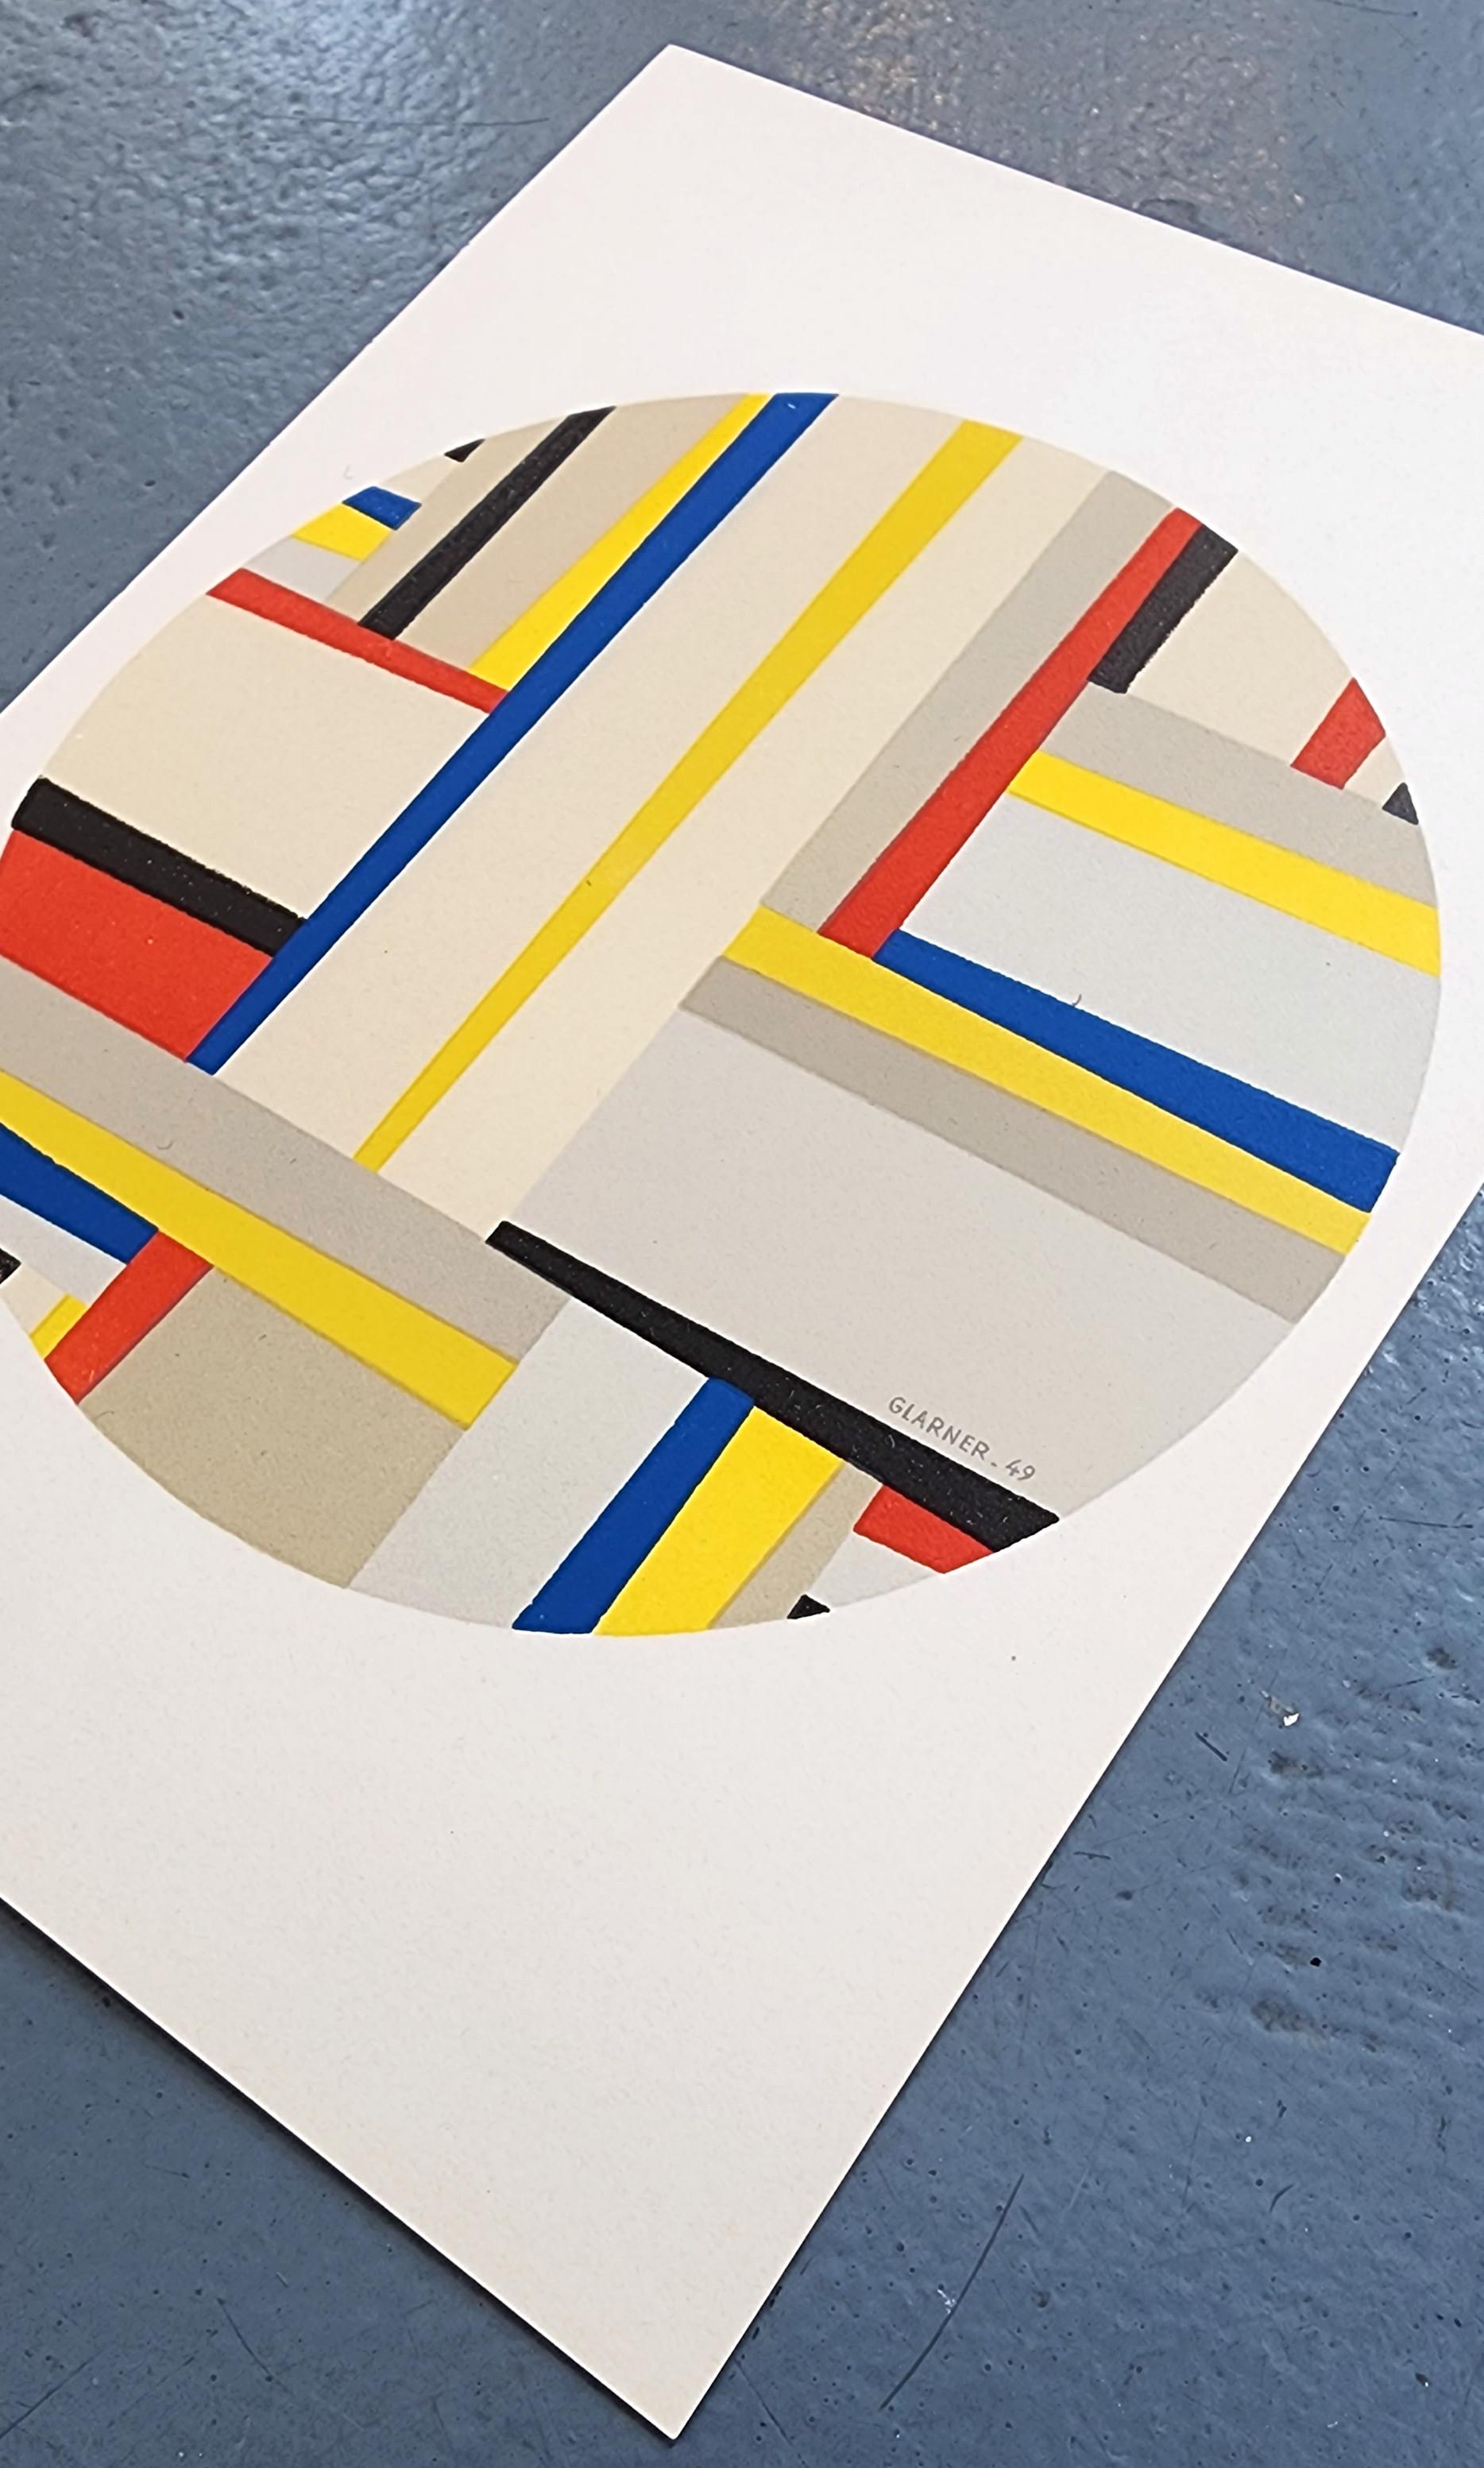 Tondo (Mourlot, Paris, Druck, Design, Modern, ~30% OFF-LIST-Preis, SCHLUSSVERKAUFSVERKAUF) – Print von Fritz Glarner